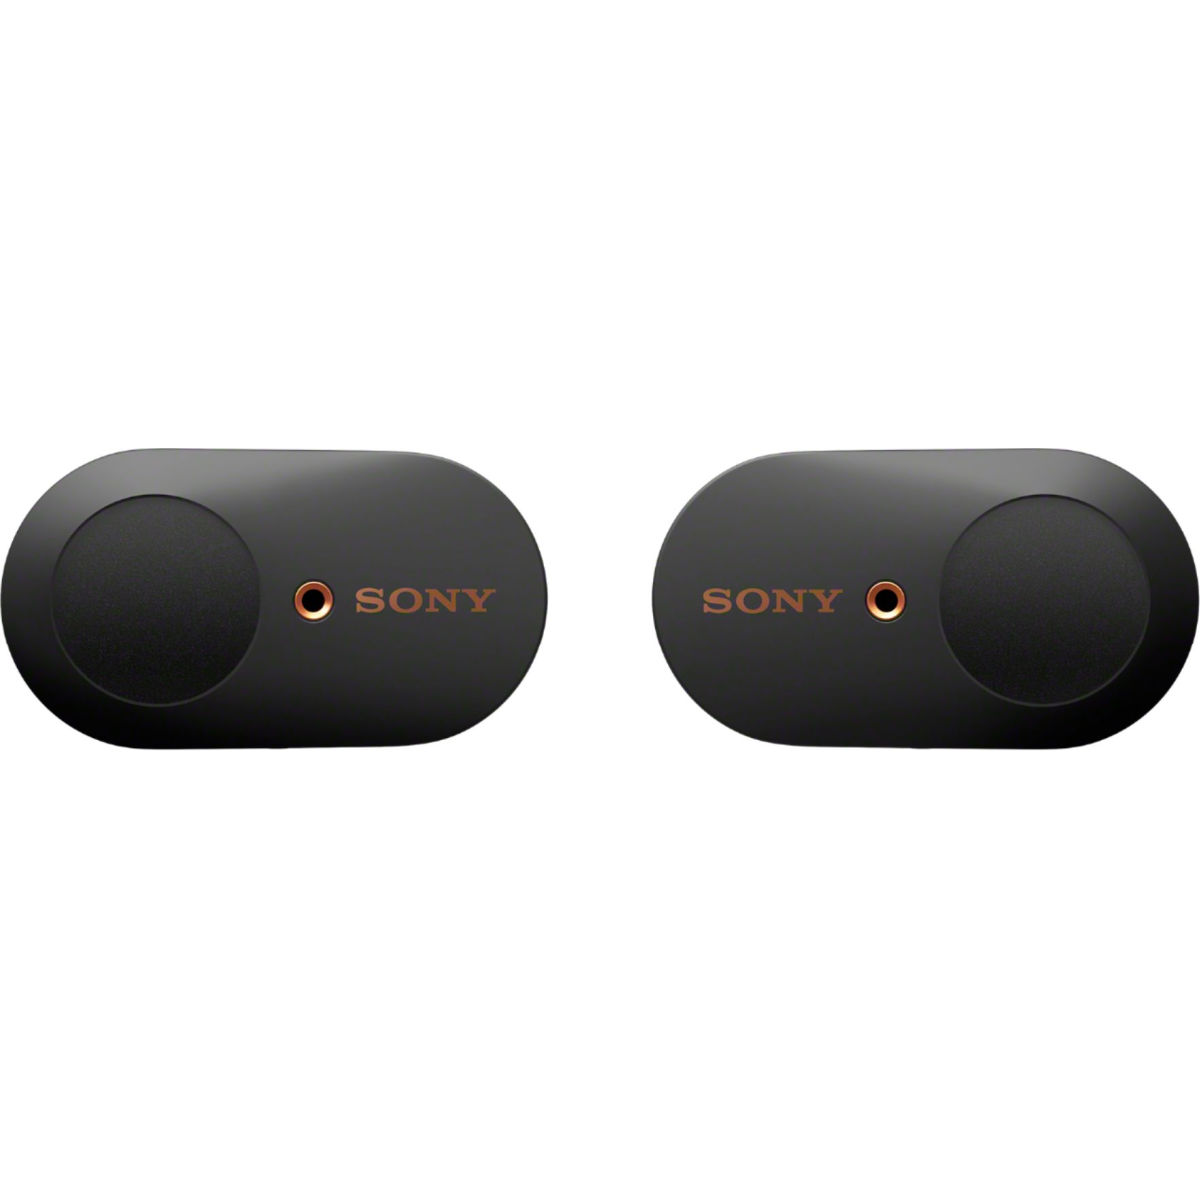 Sony WF-1000XM3 True Wireless Noise Cancelling In-Ear Headphones